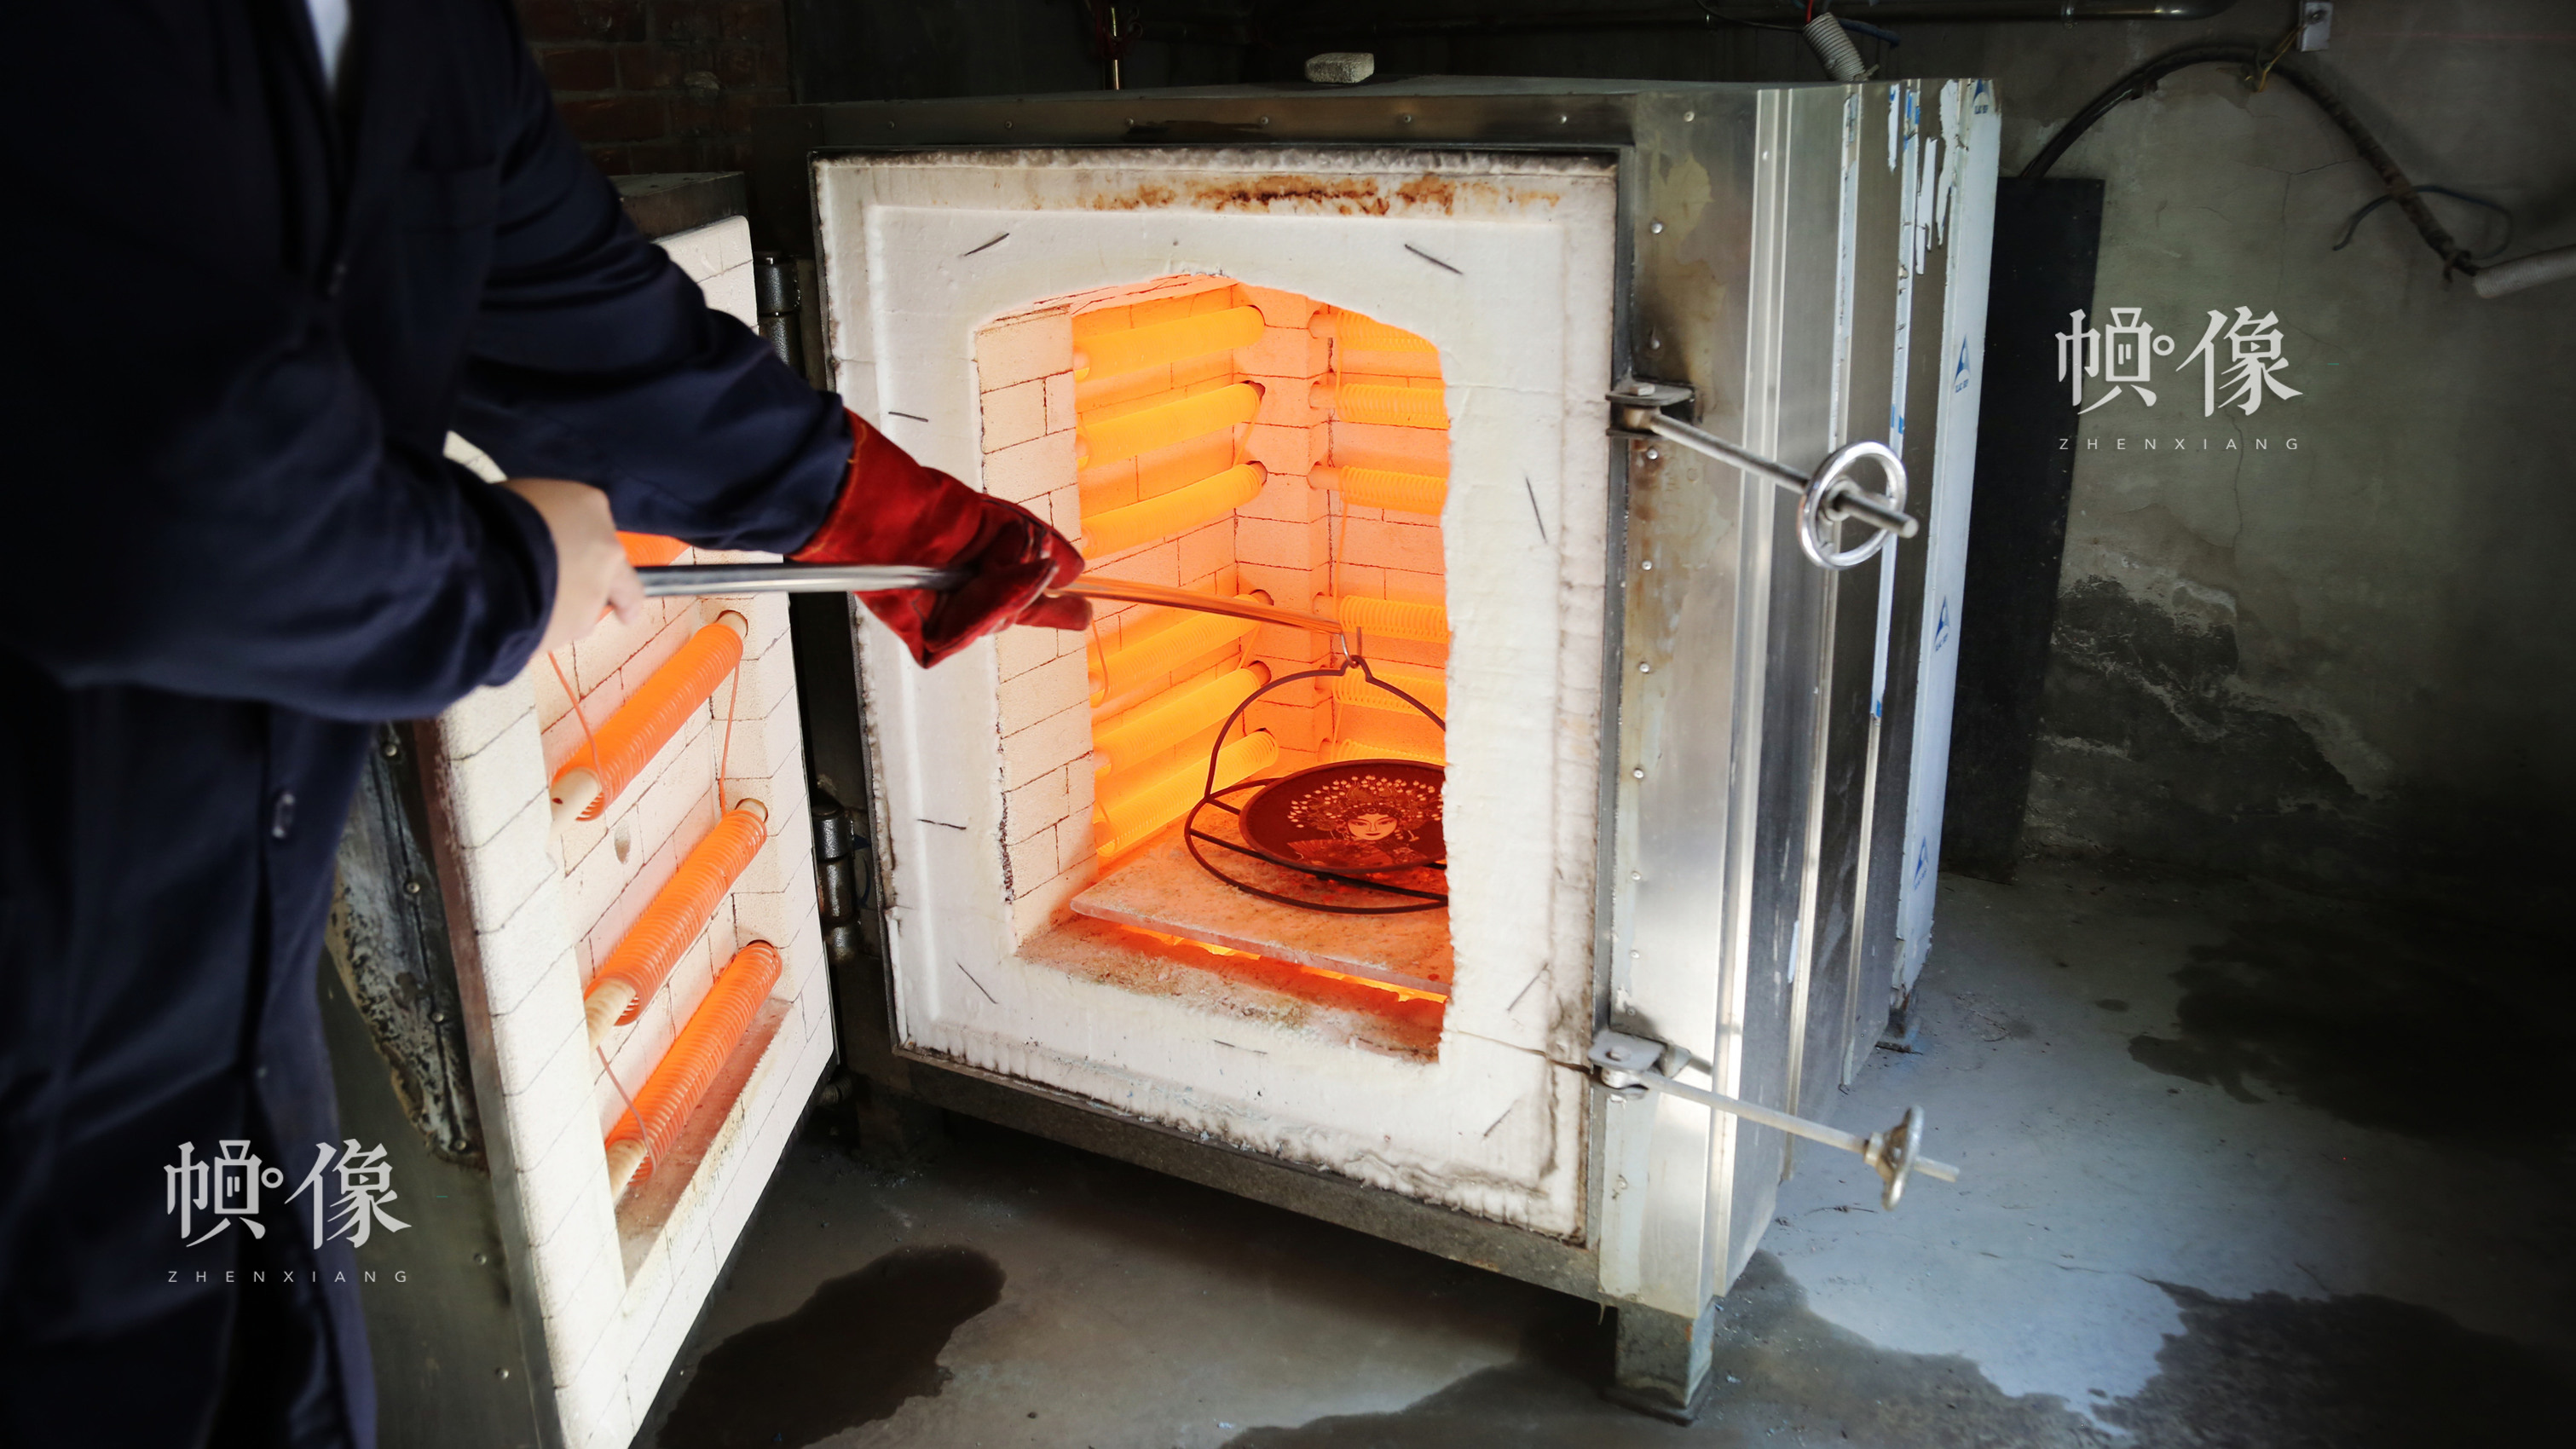 工匠把待燒的銅胚放到高溫達800多度的電火爐中燒制。中國網記者 趙超 攝